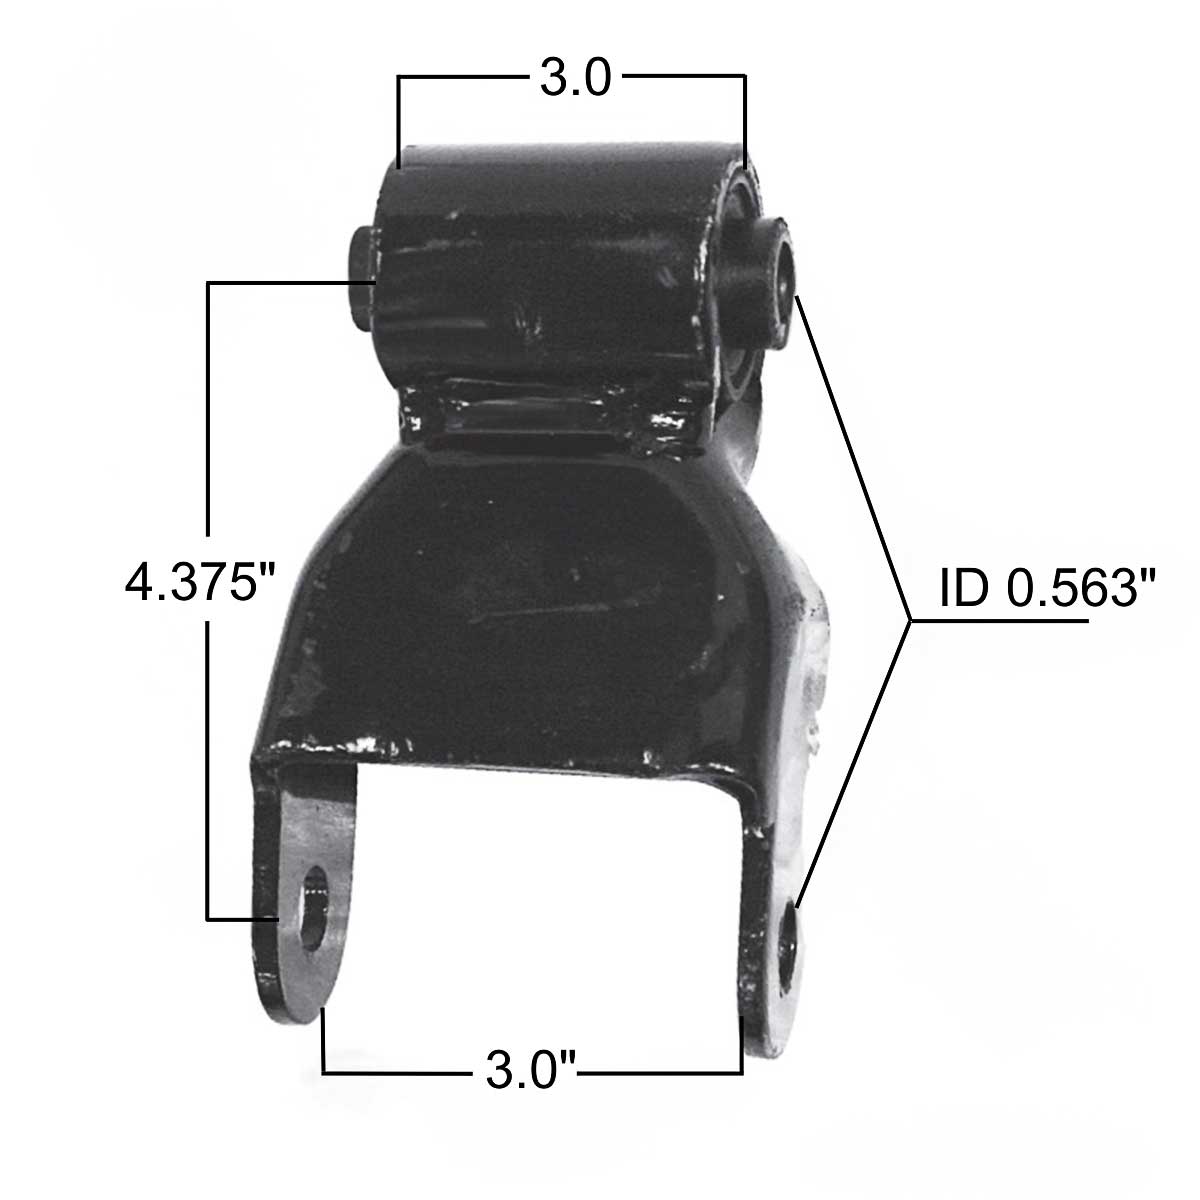 Chevrolet/GM rear leaf spring shackle M1753 measurements.